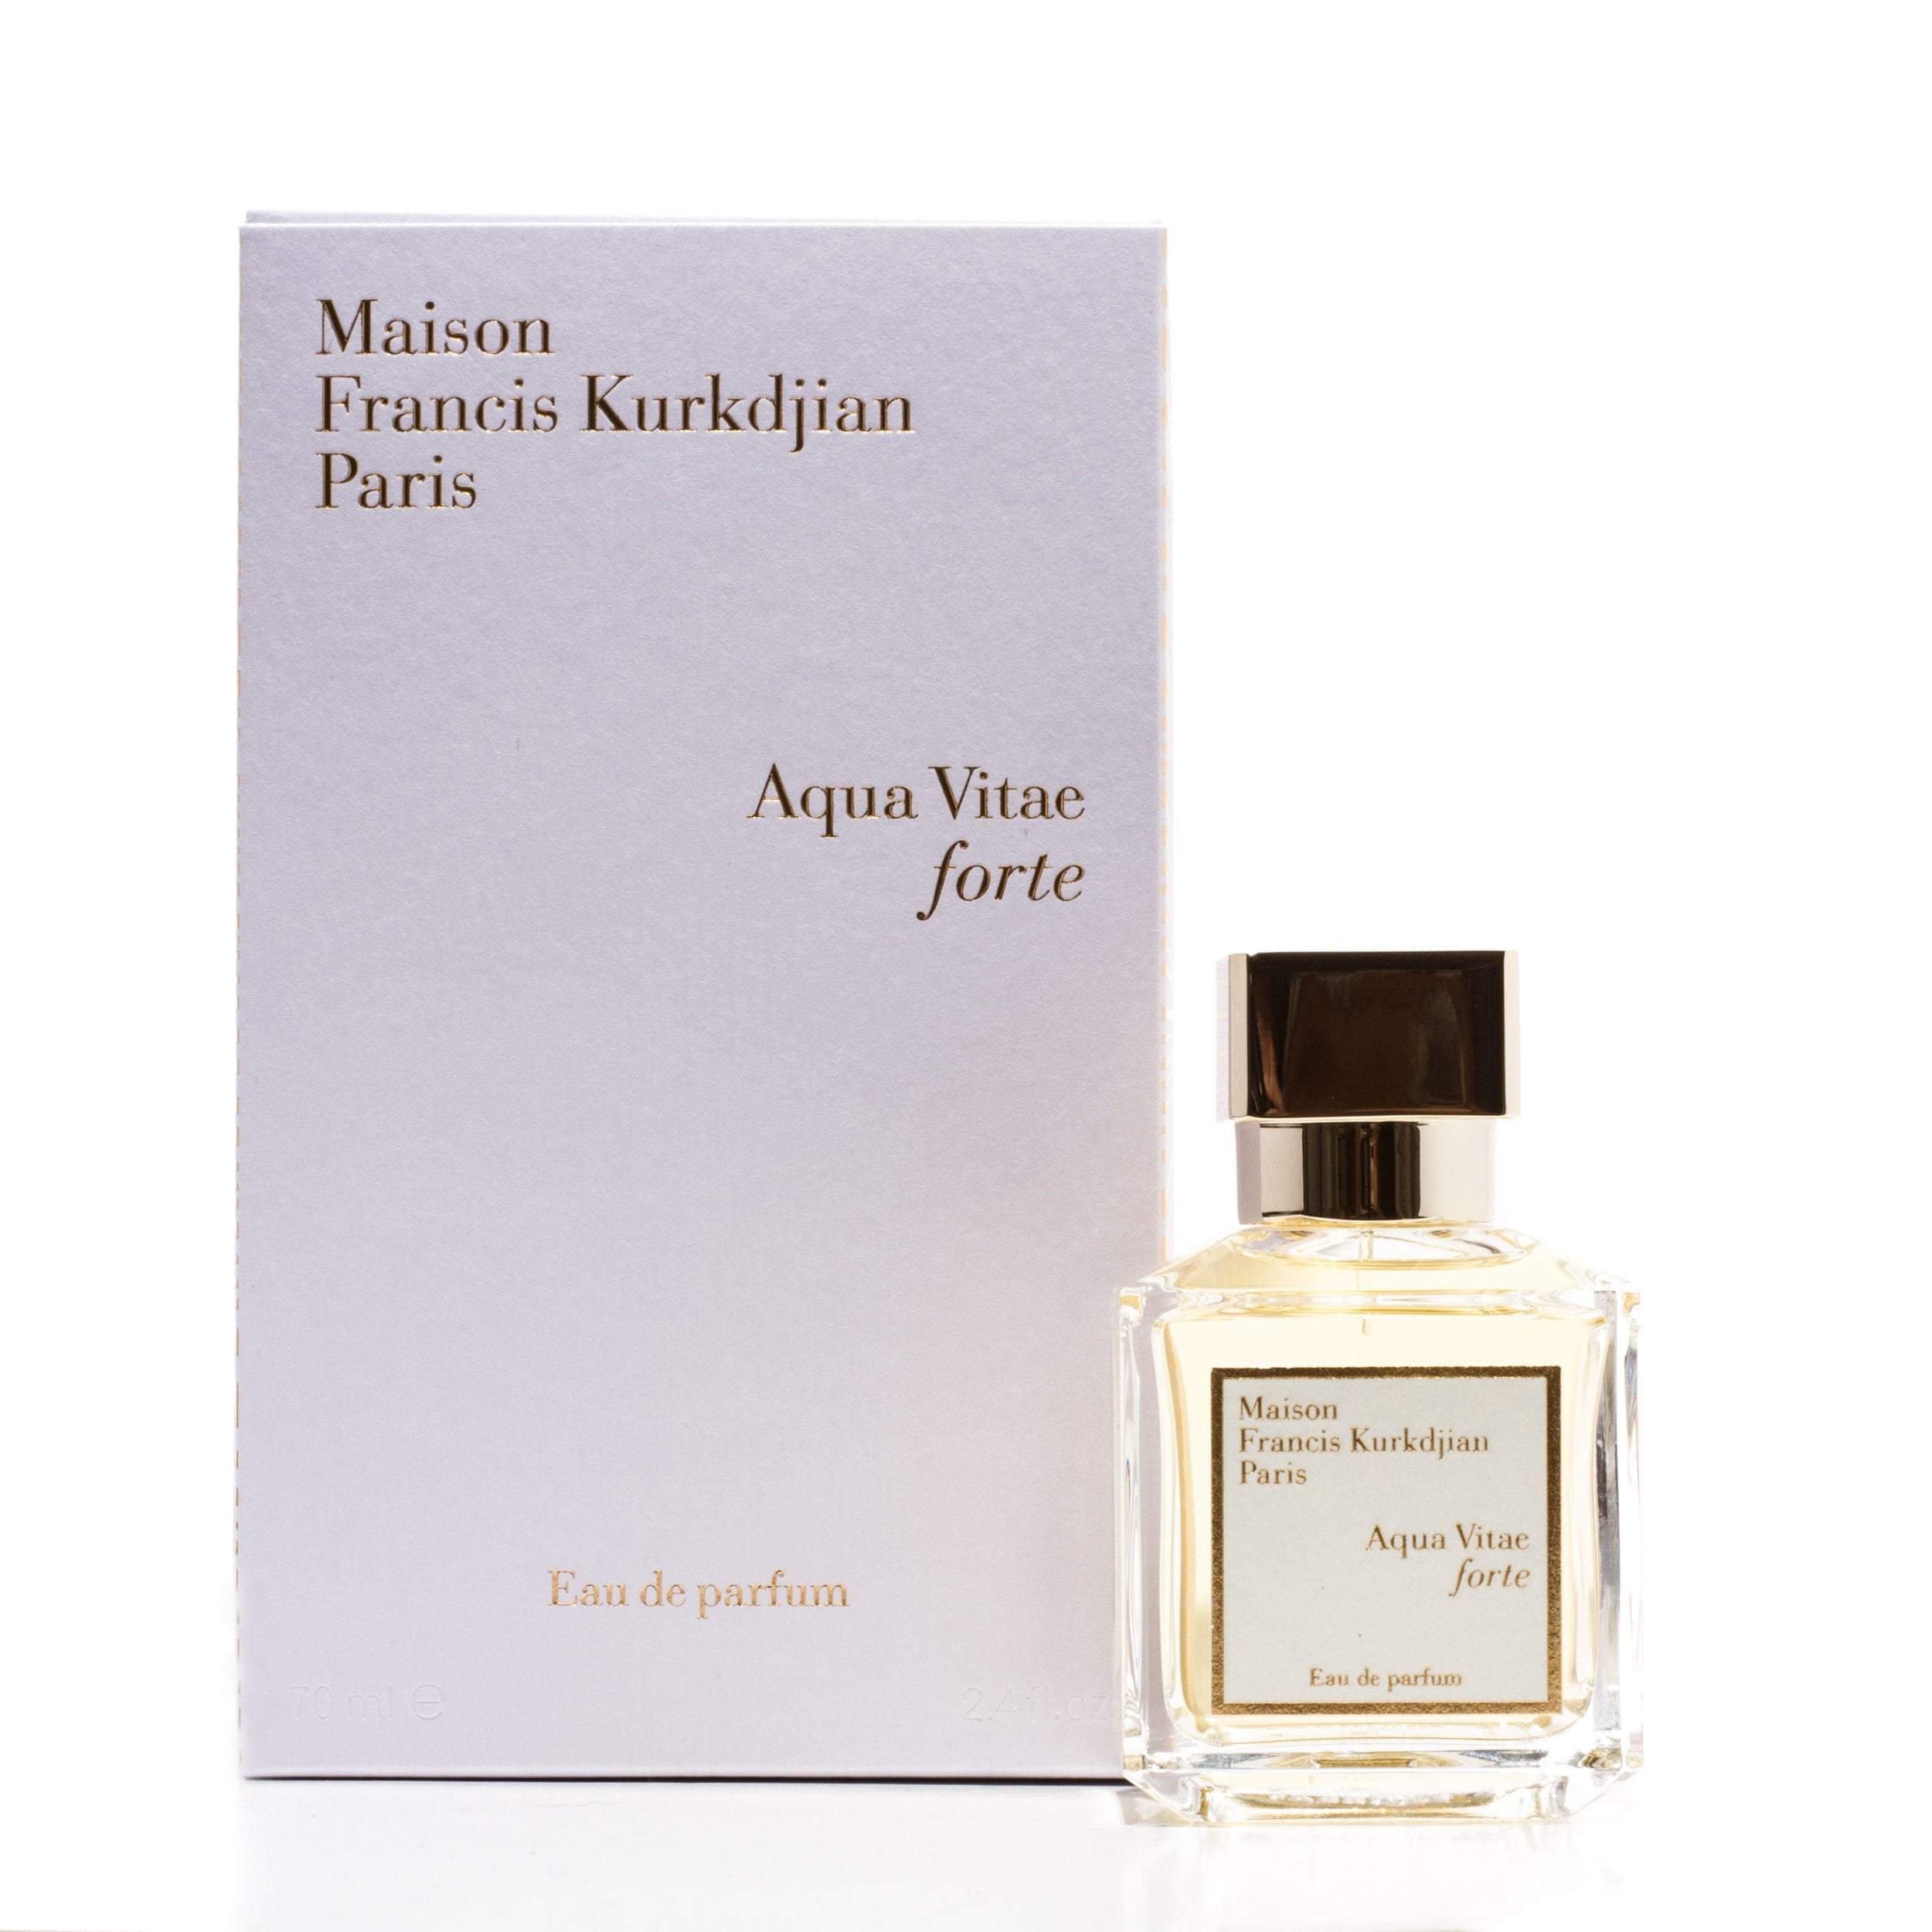 Aqua Vitae Forte 70ml Edp By Maison francis Kurkdjian - Perfume in ...